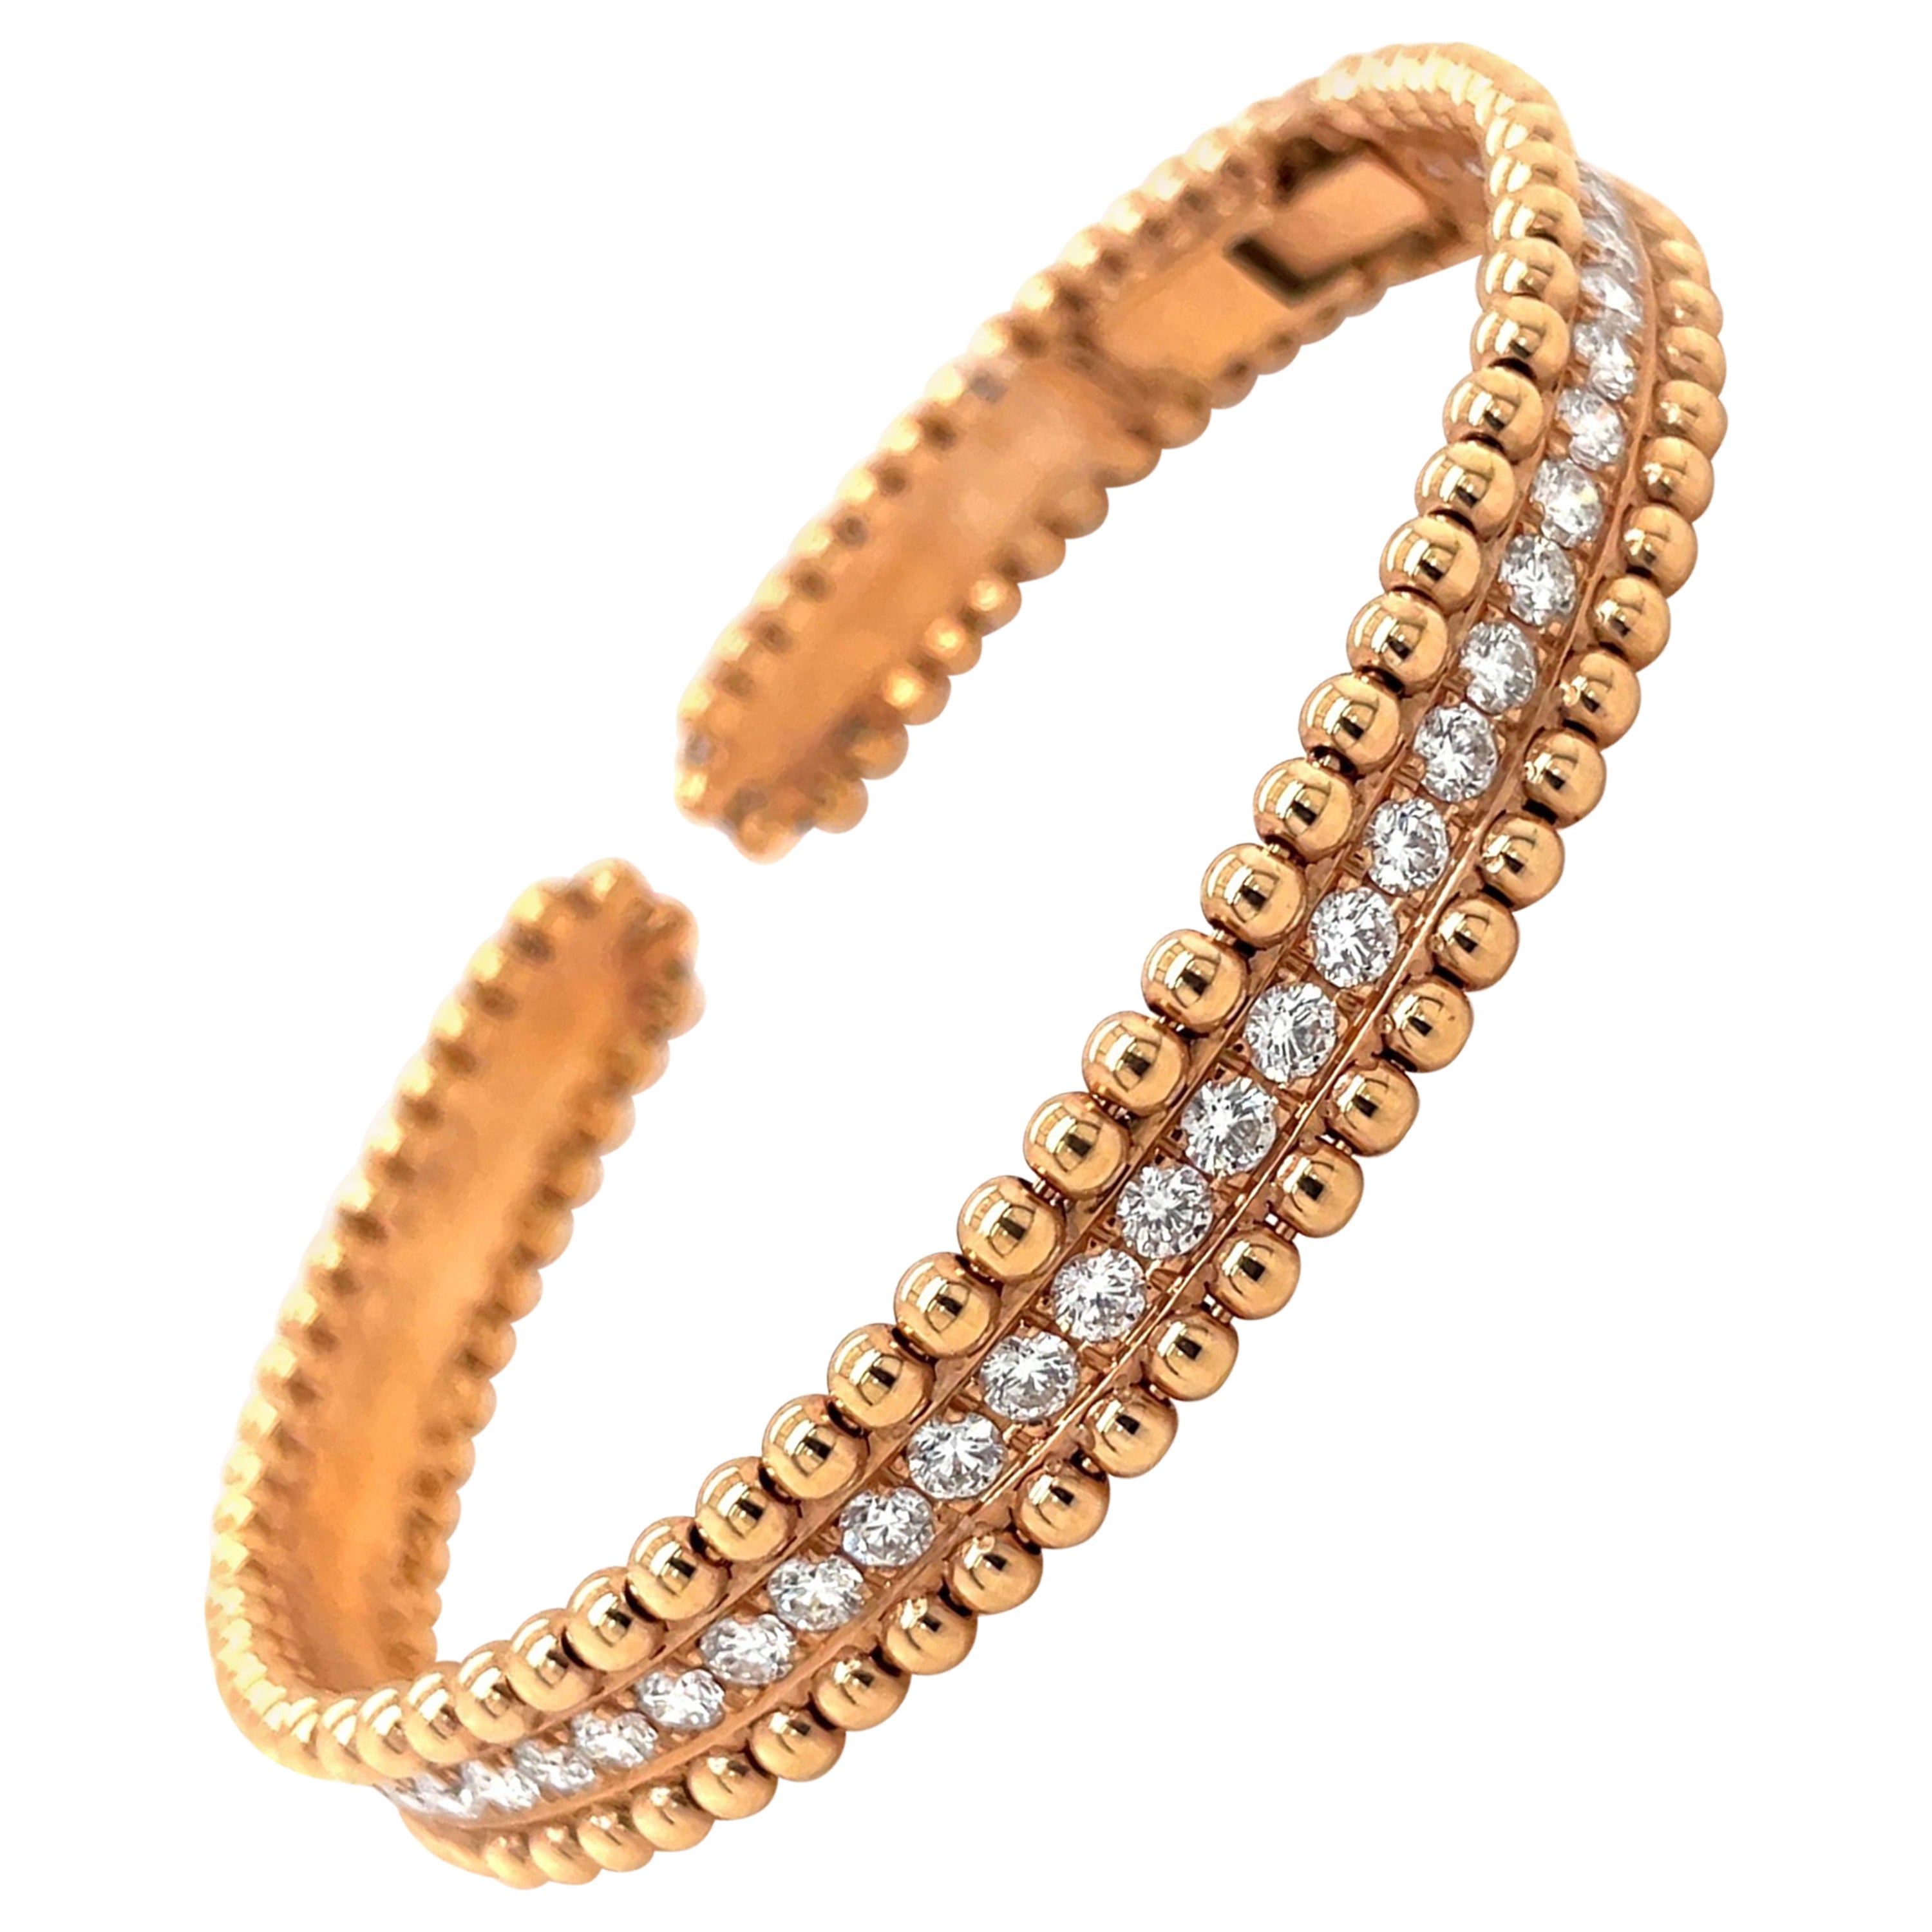 Armband aus 18 Karat Roségold mit 1,85 Karat Diamanten und perlenbesetztem Rand